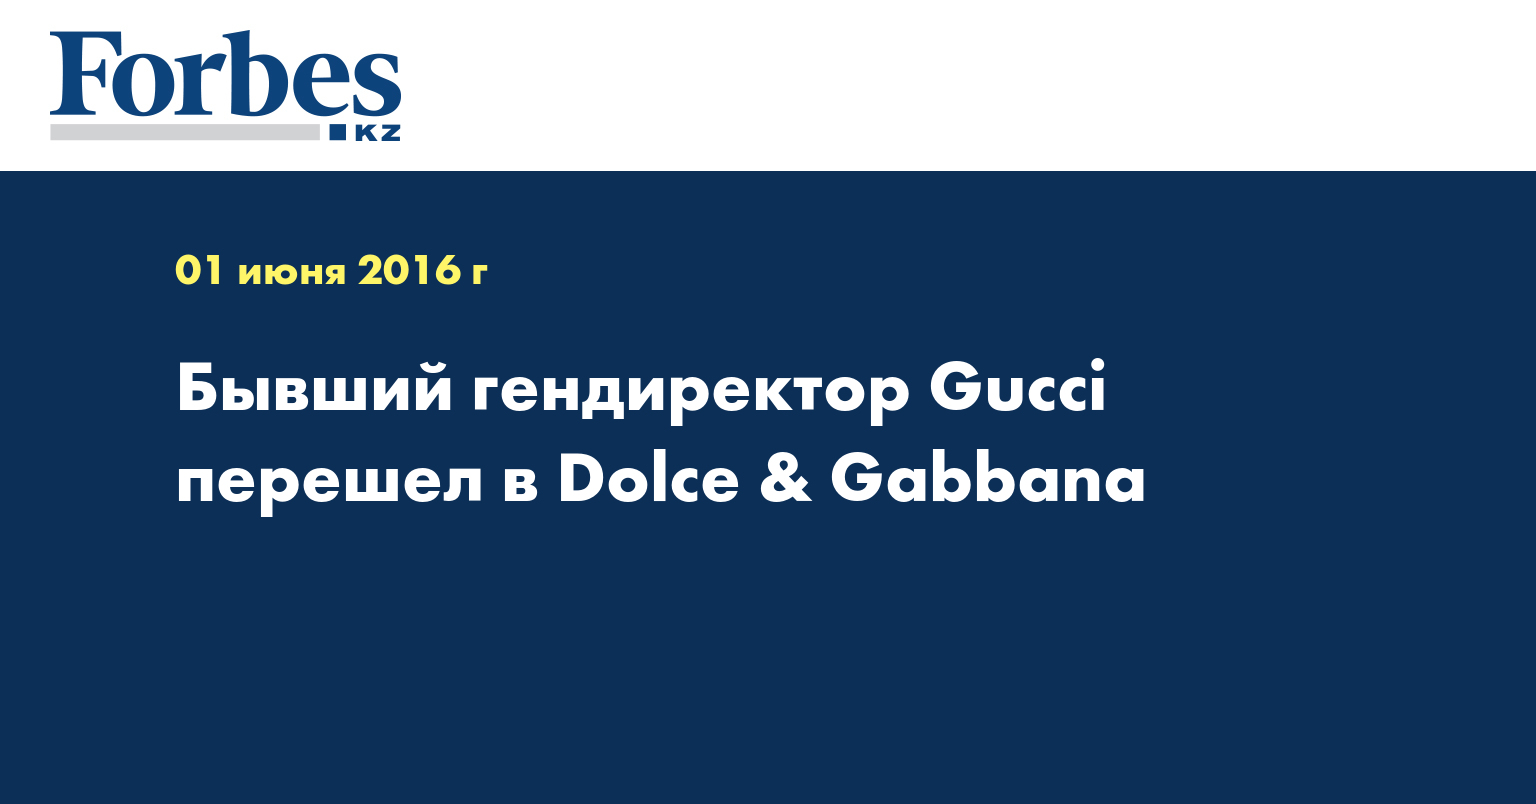 Бывший гендиректор Gucci перешел в Dolce & Gabbana